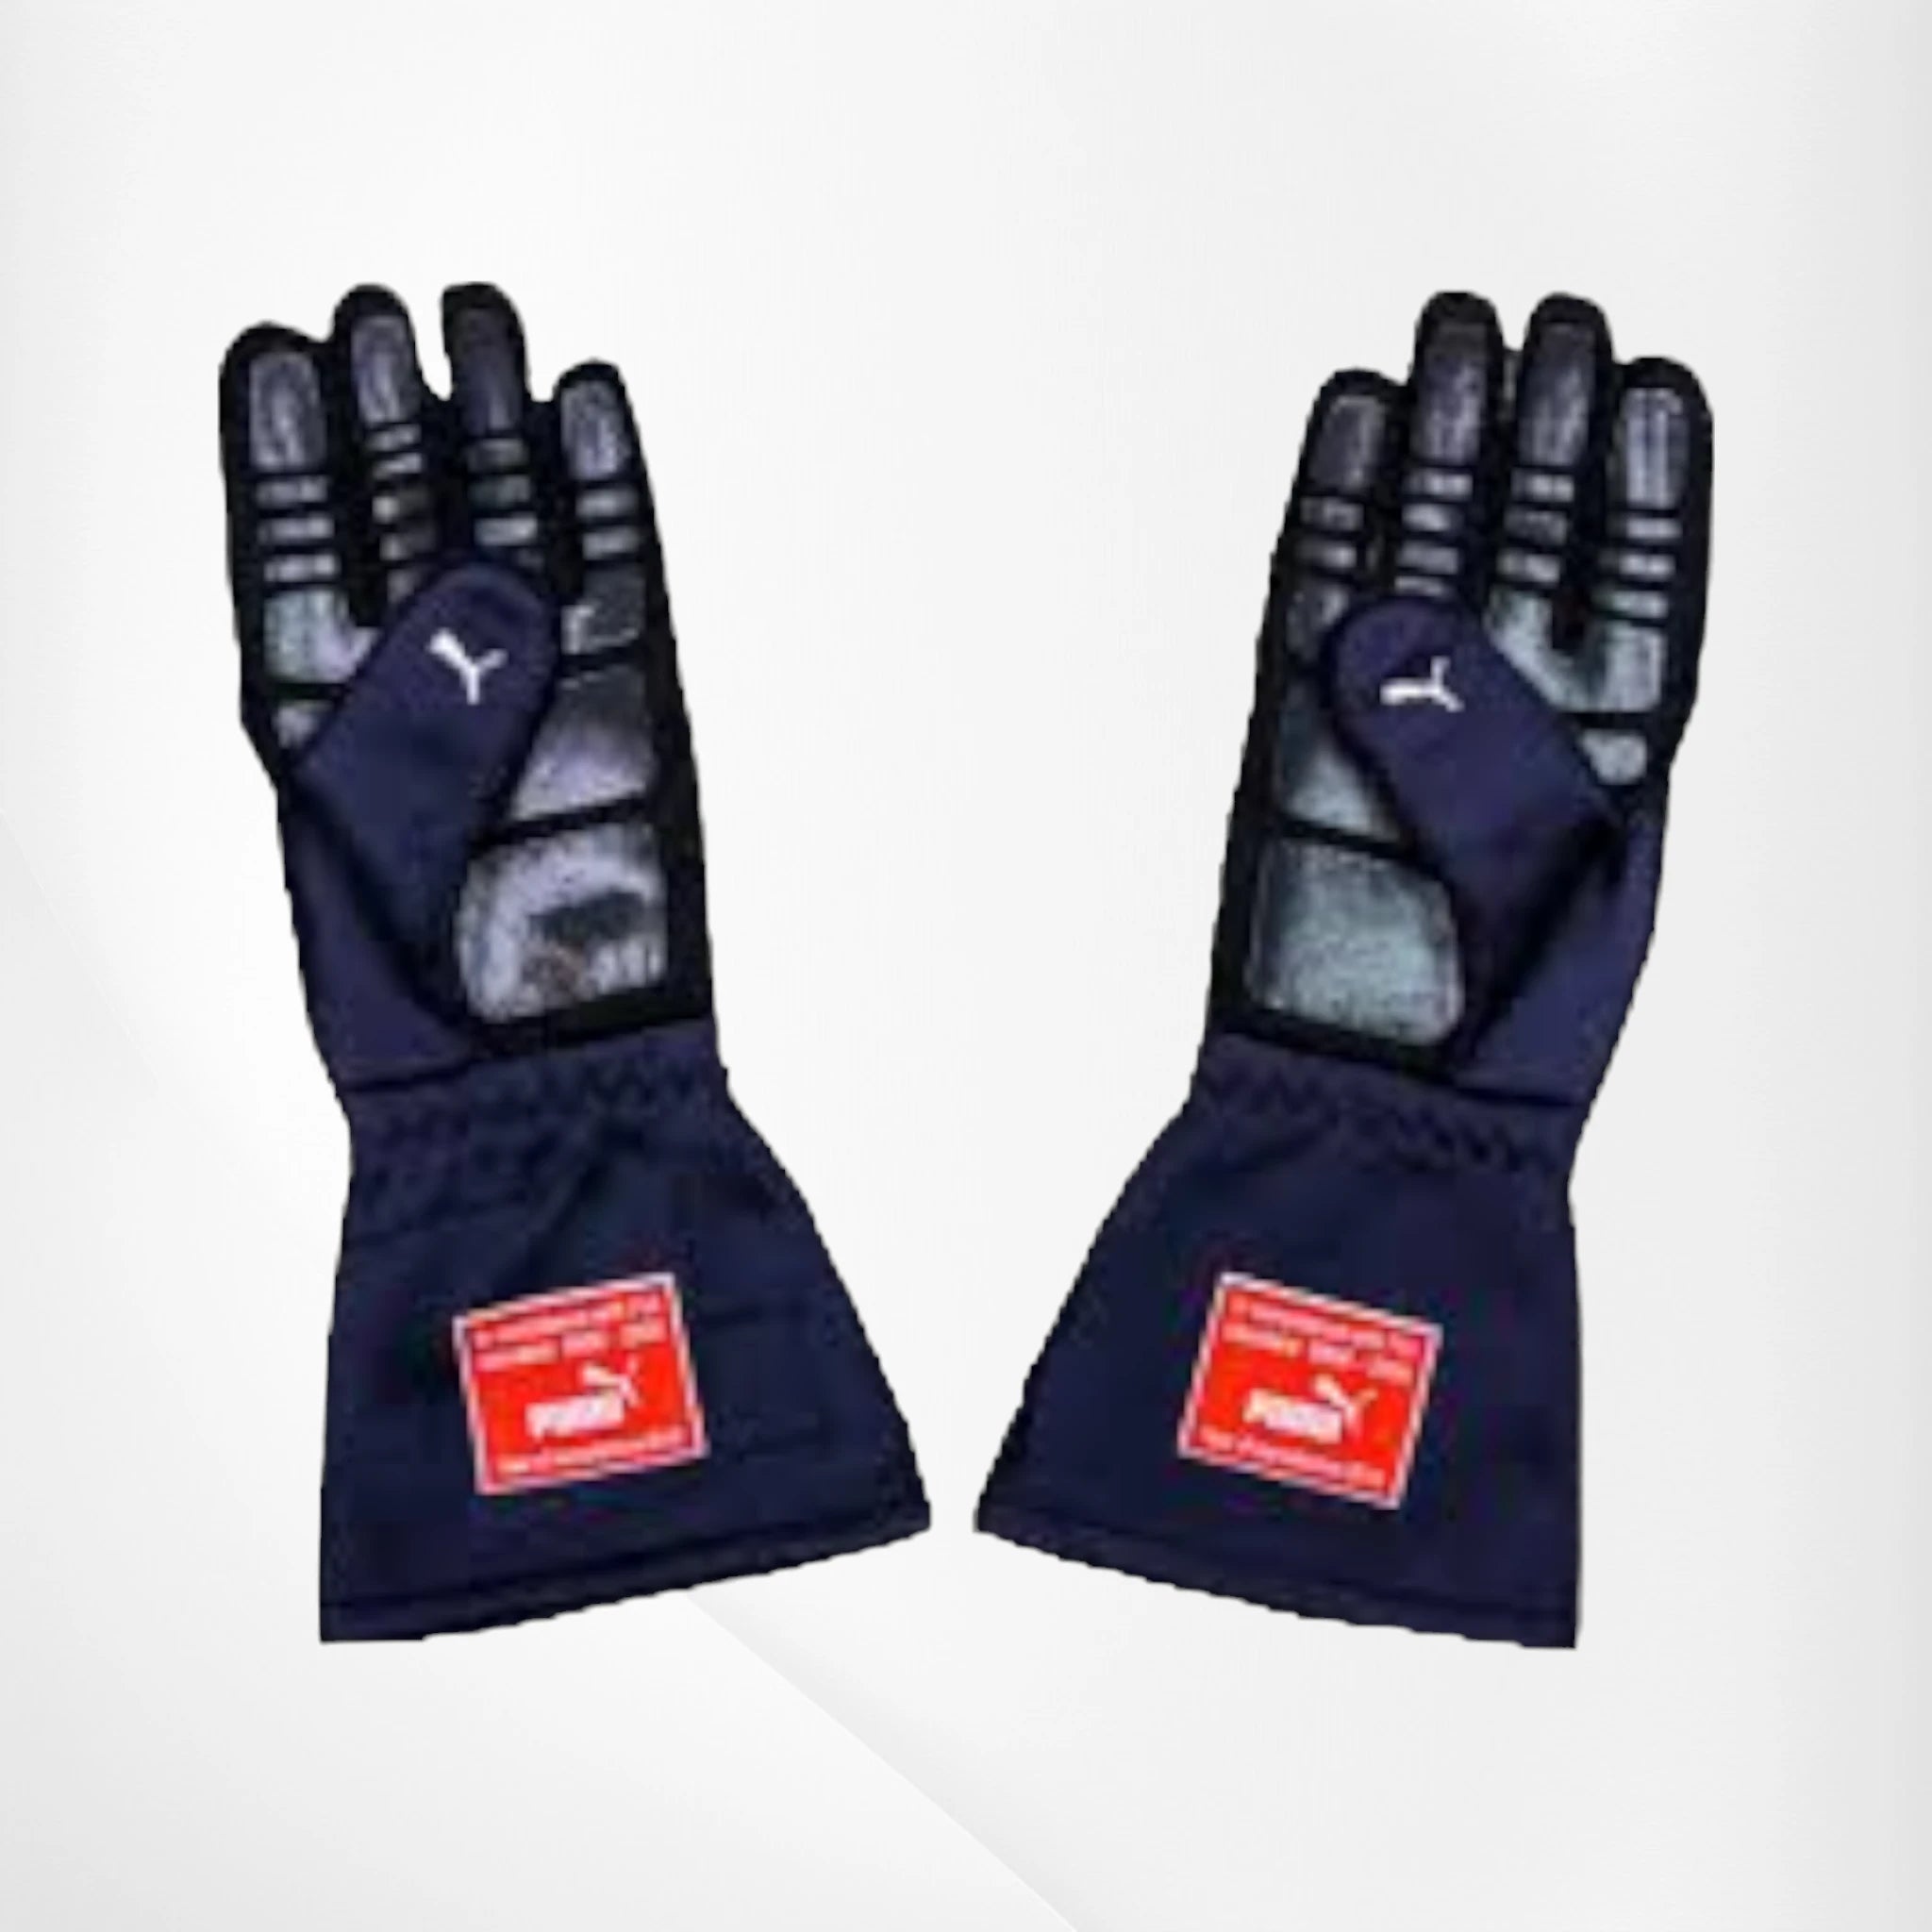 2019 Red Bull Max Verstappen F1 Race Gloves